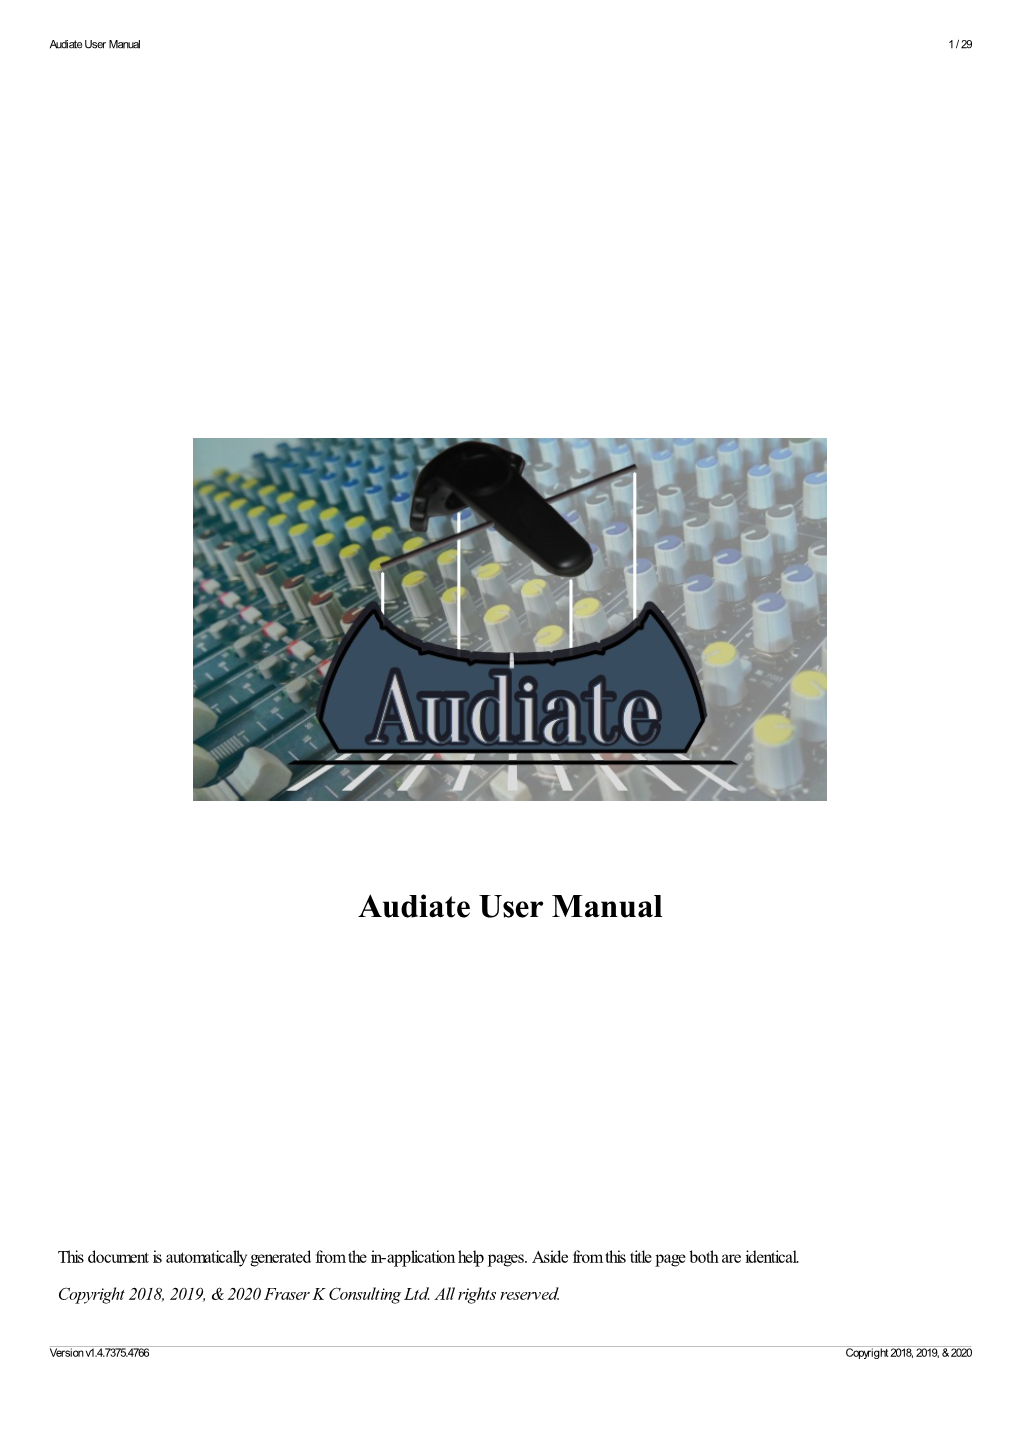 Audiate User Manual 1 / 29